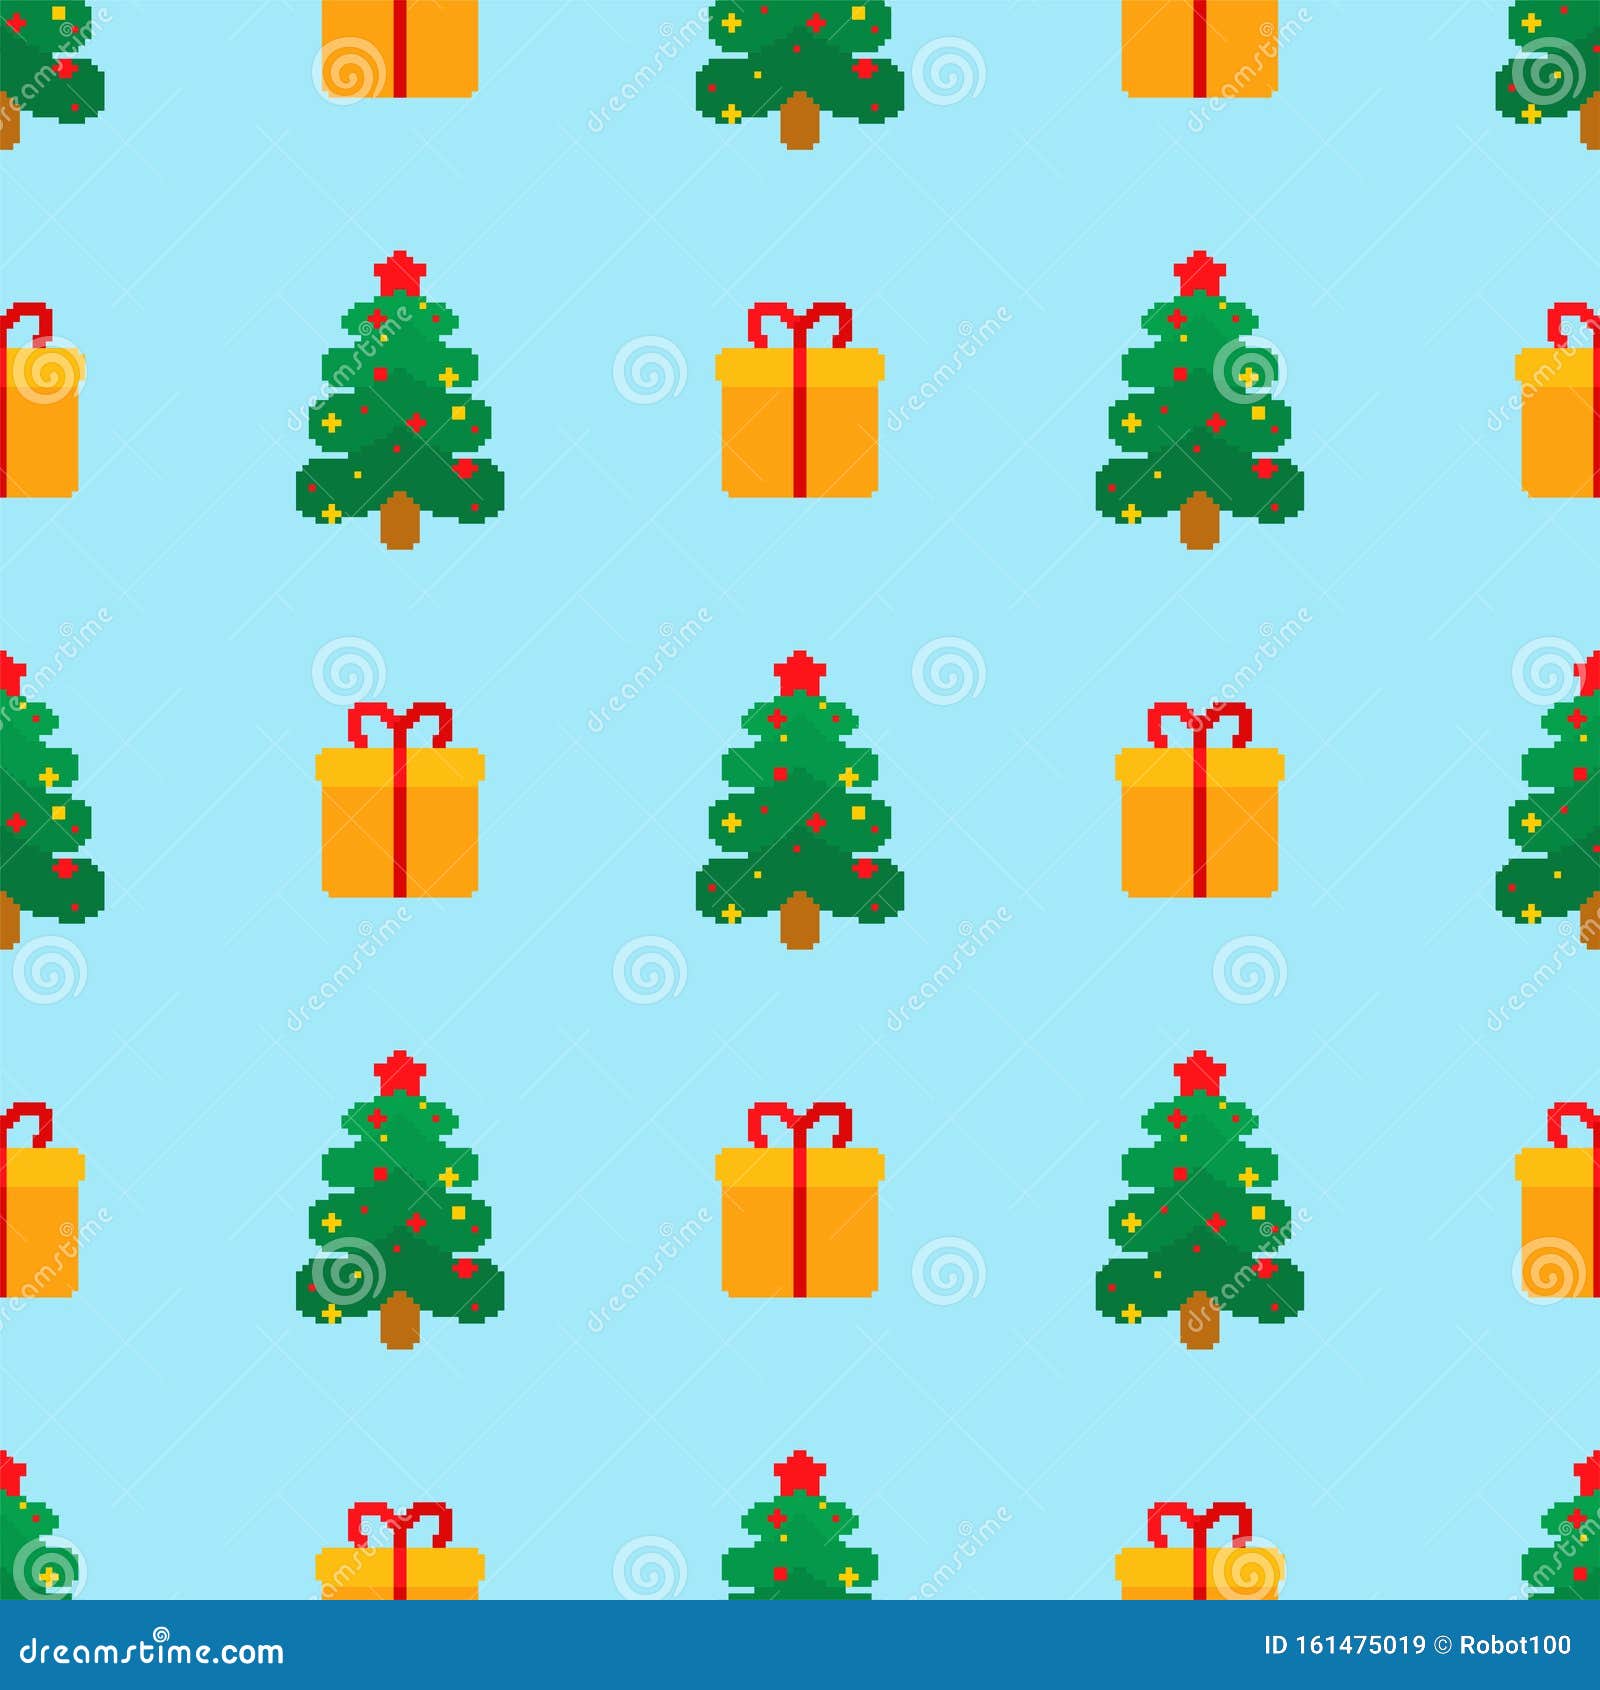 Mẫu pixel art cây thông Giáng Sinh liền kề. Nền 8 bit mỡ thông... thật dễ thương! Với những cây thông 8 bit tuyệt vời và những đốm tuyết rơi, bạn sẽ cảm thấy mình đang sống trong một trang trại Giáng Sinh thật đẹp đẽ. Hãy lấy cảm hứng từ bức tranh pixel art này để trang trí cho mình một mùa Giáng Sinh đầy ấm áp và niềm vui nhé!